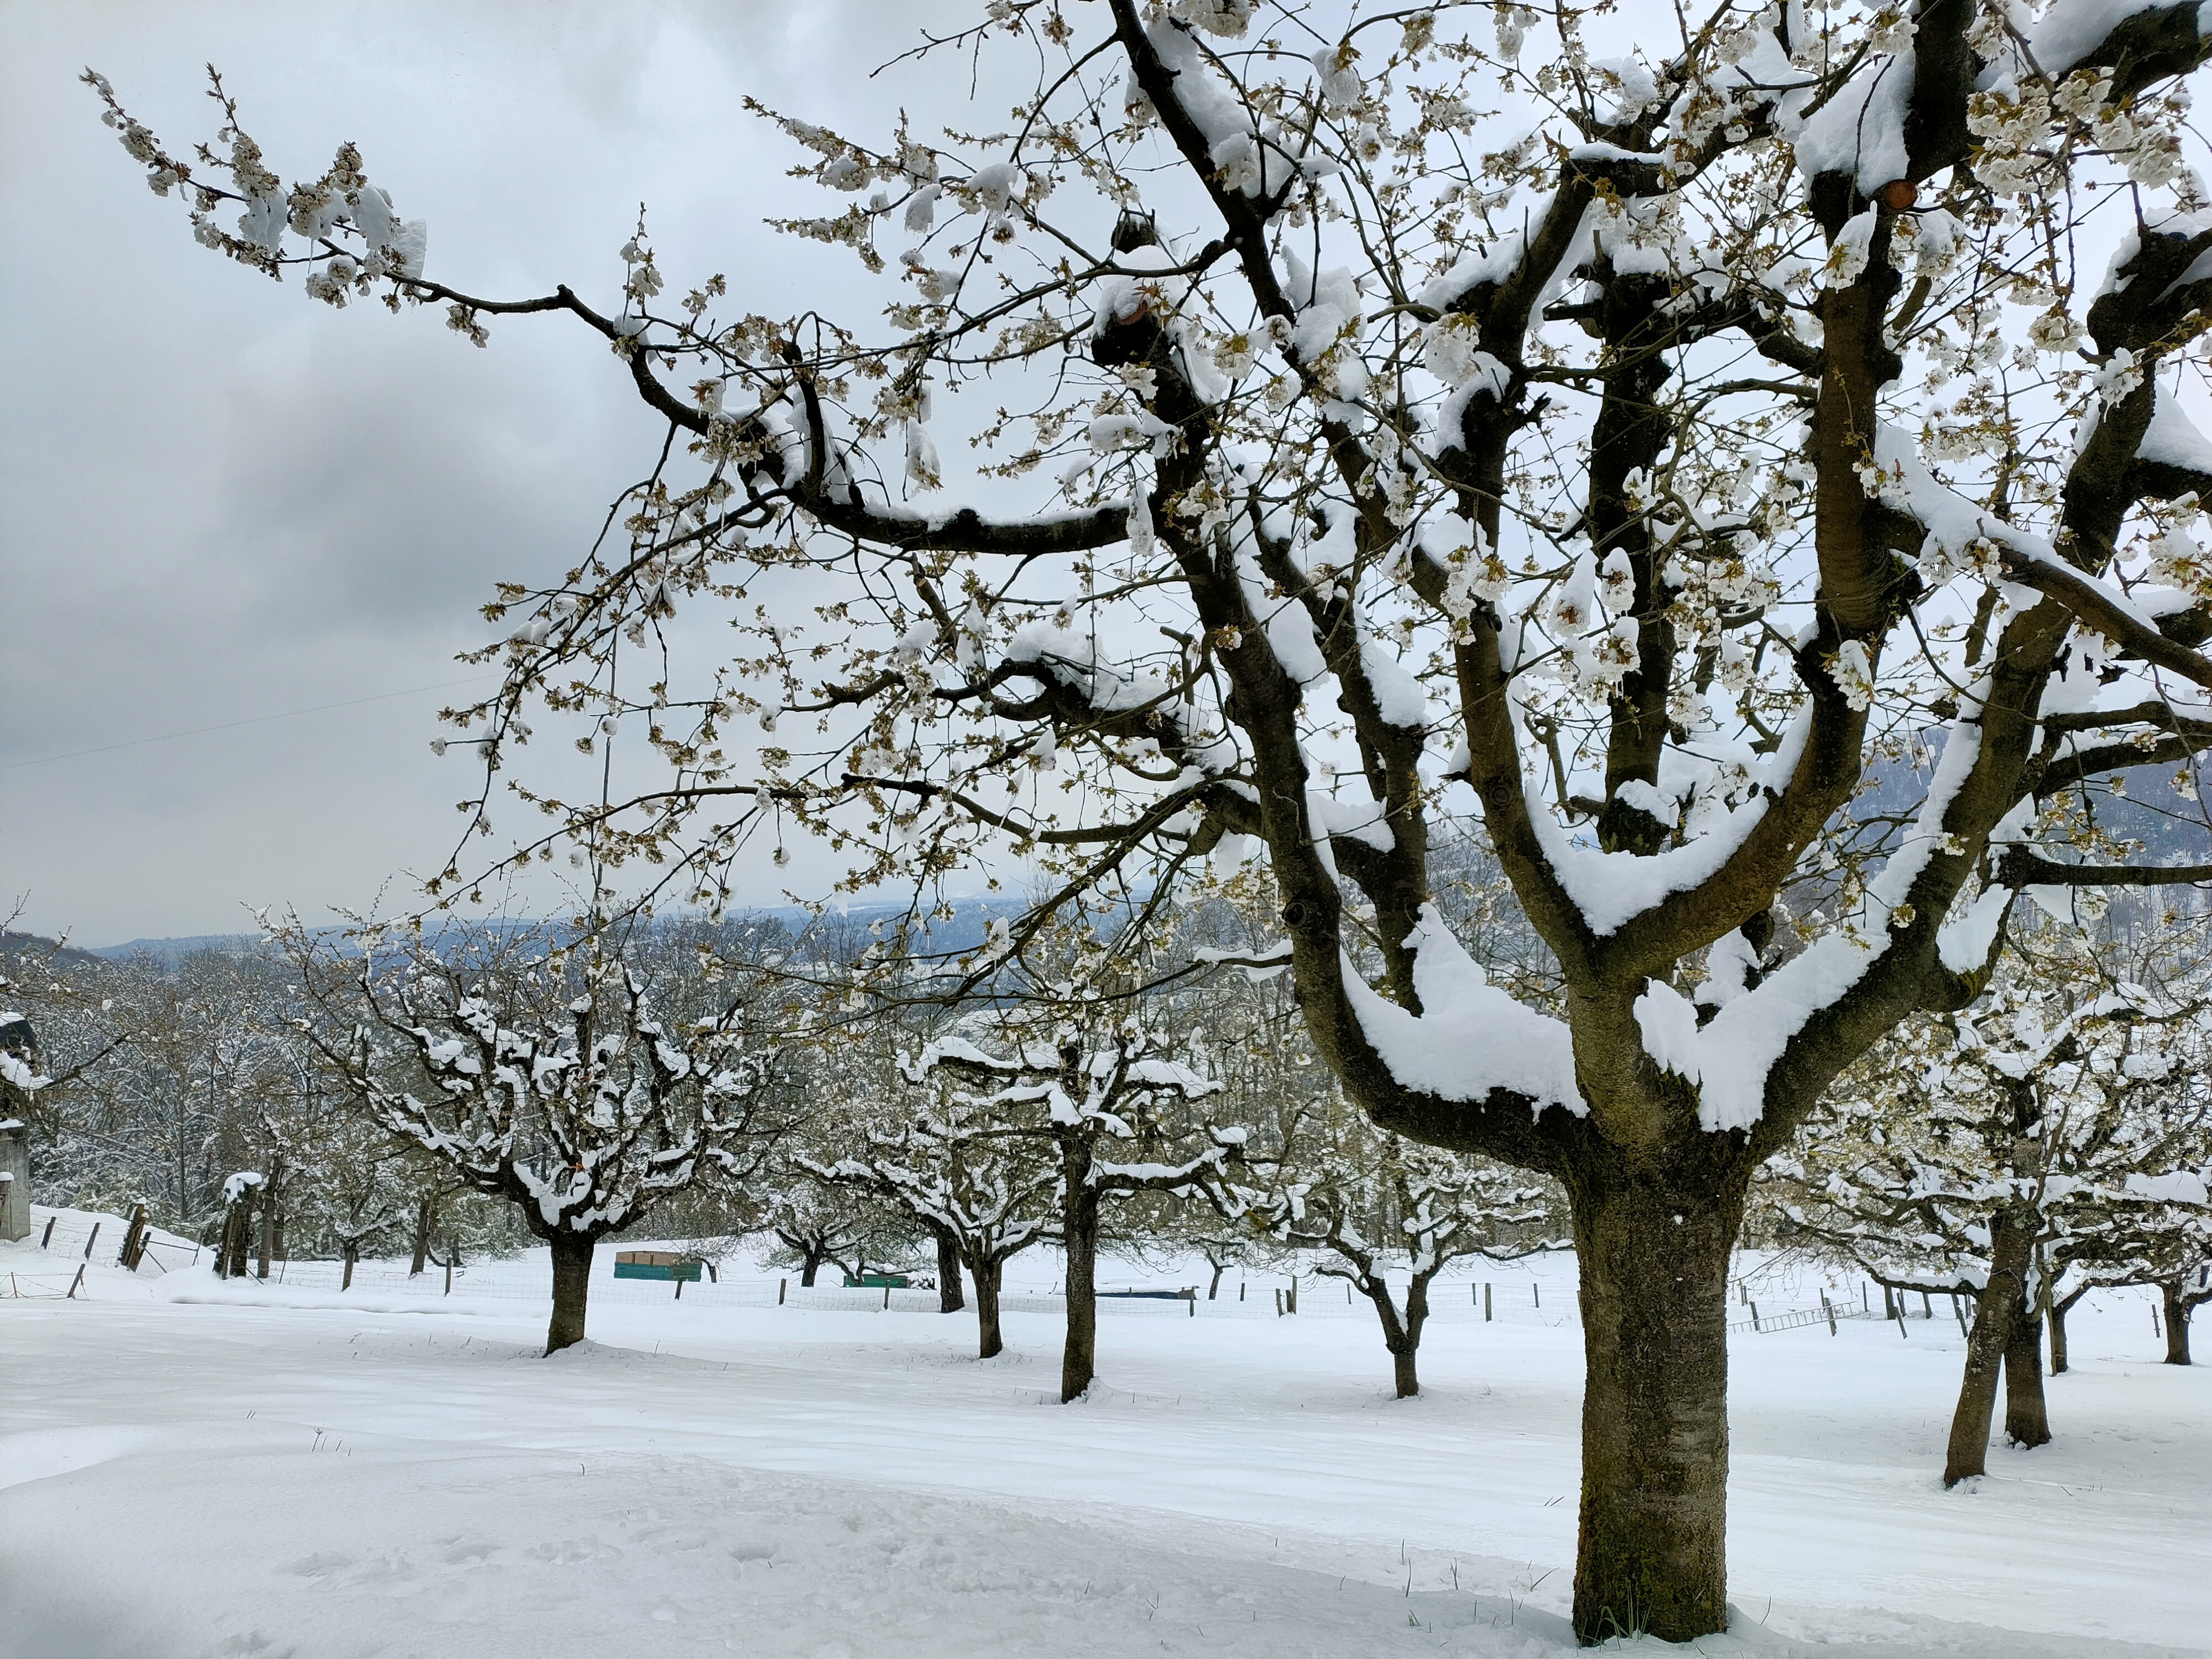 Kirschgarten in Büren am 3. April 2022: Ein Wintereinbruch mit bis zu 30 Zentimeter Neuschnee und strengem Frost trifft die Kirschbäume in der vollen Blüte. 